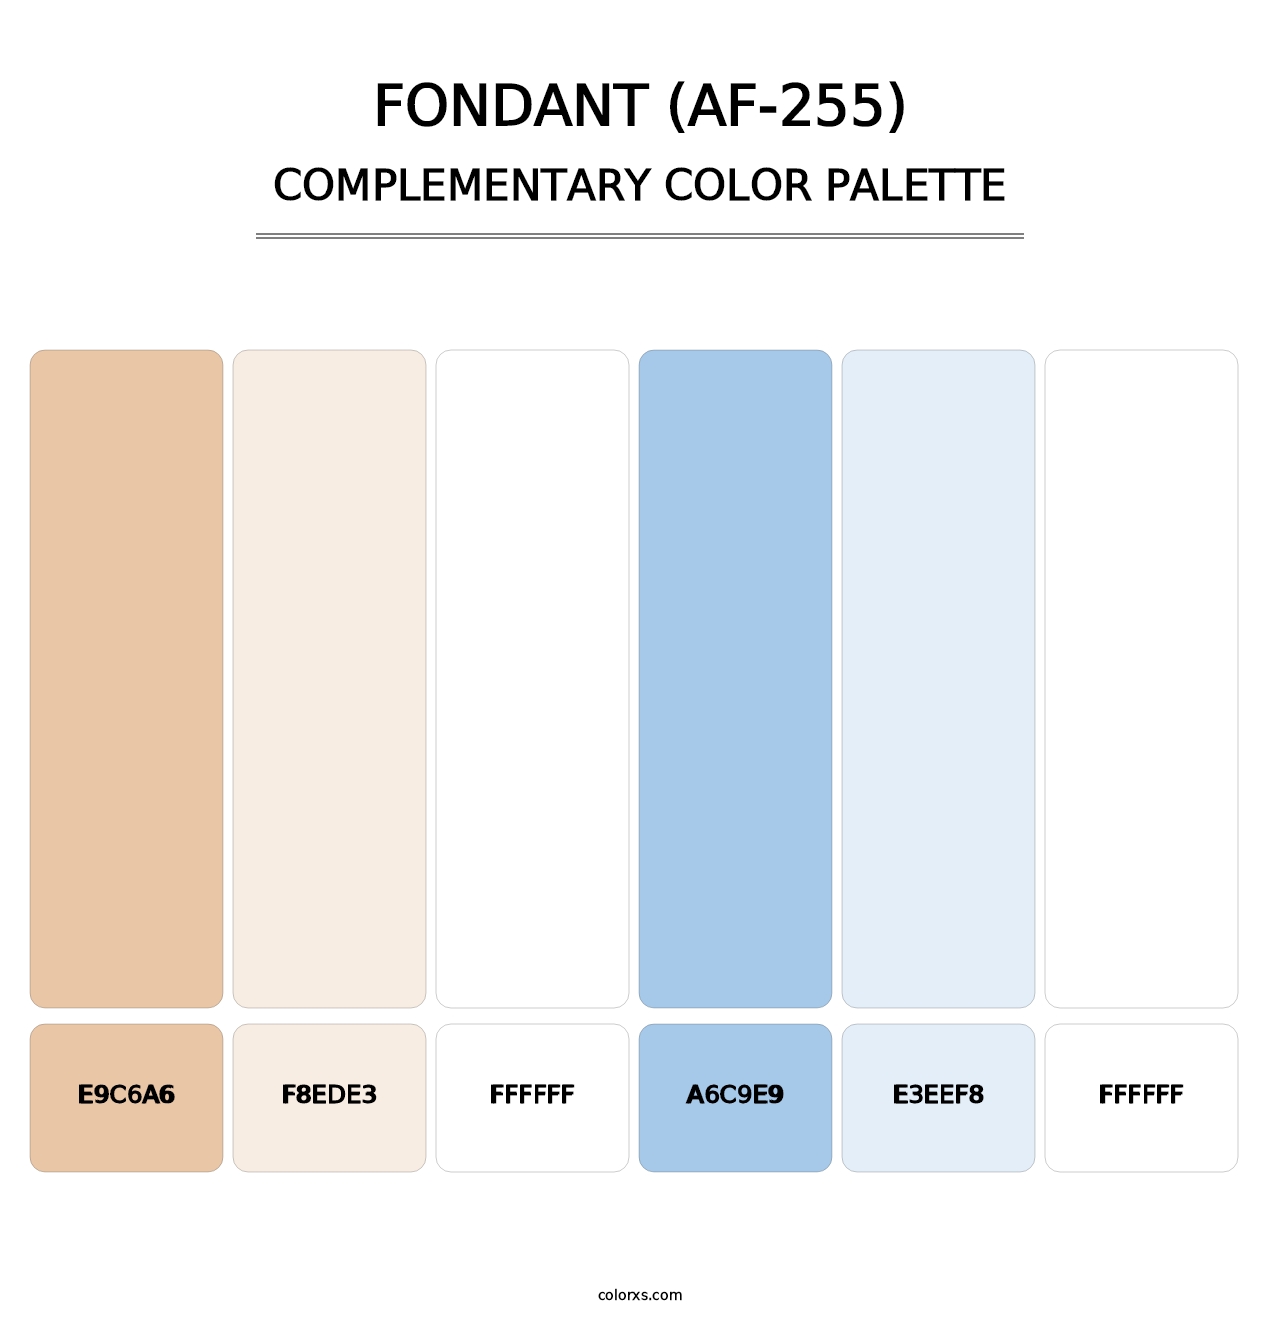 Fondant (AF-255) - Complementary Color Palette